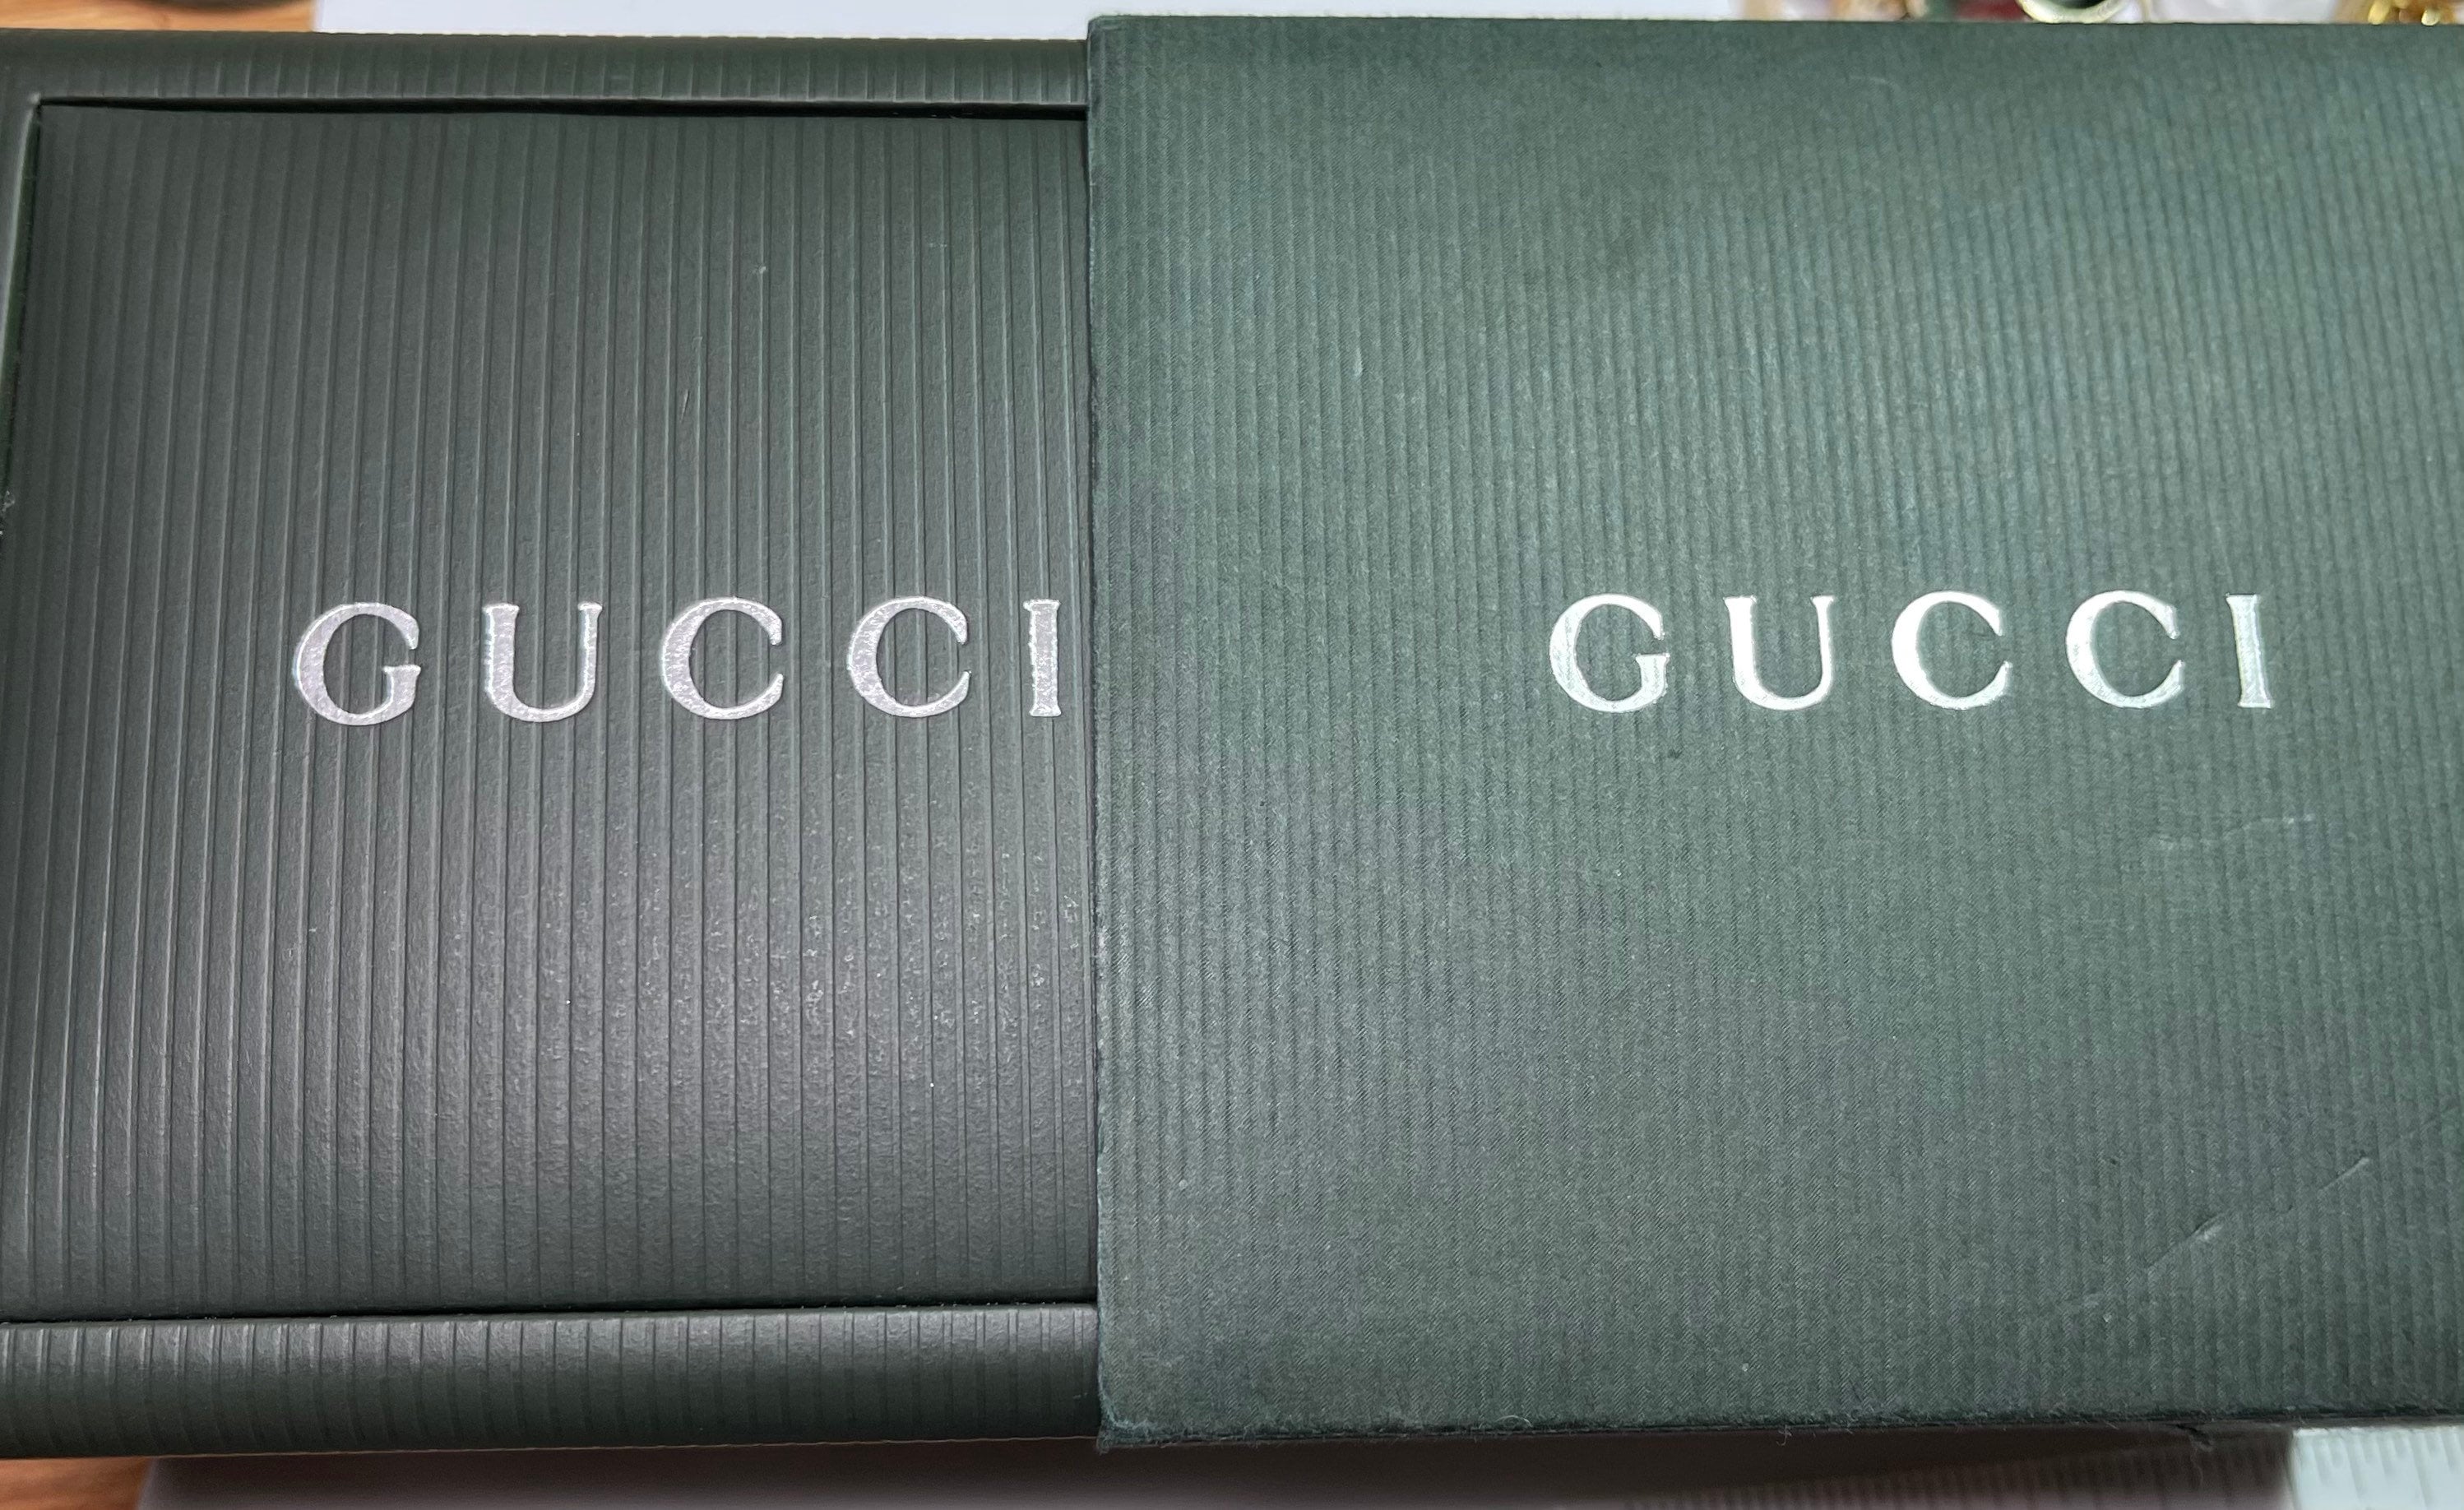 Gucci 600L Like New Watch